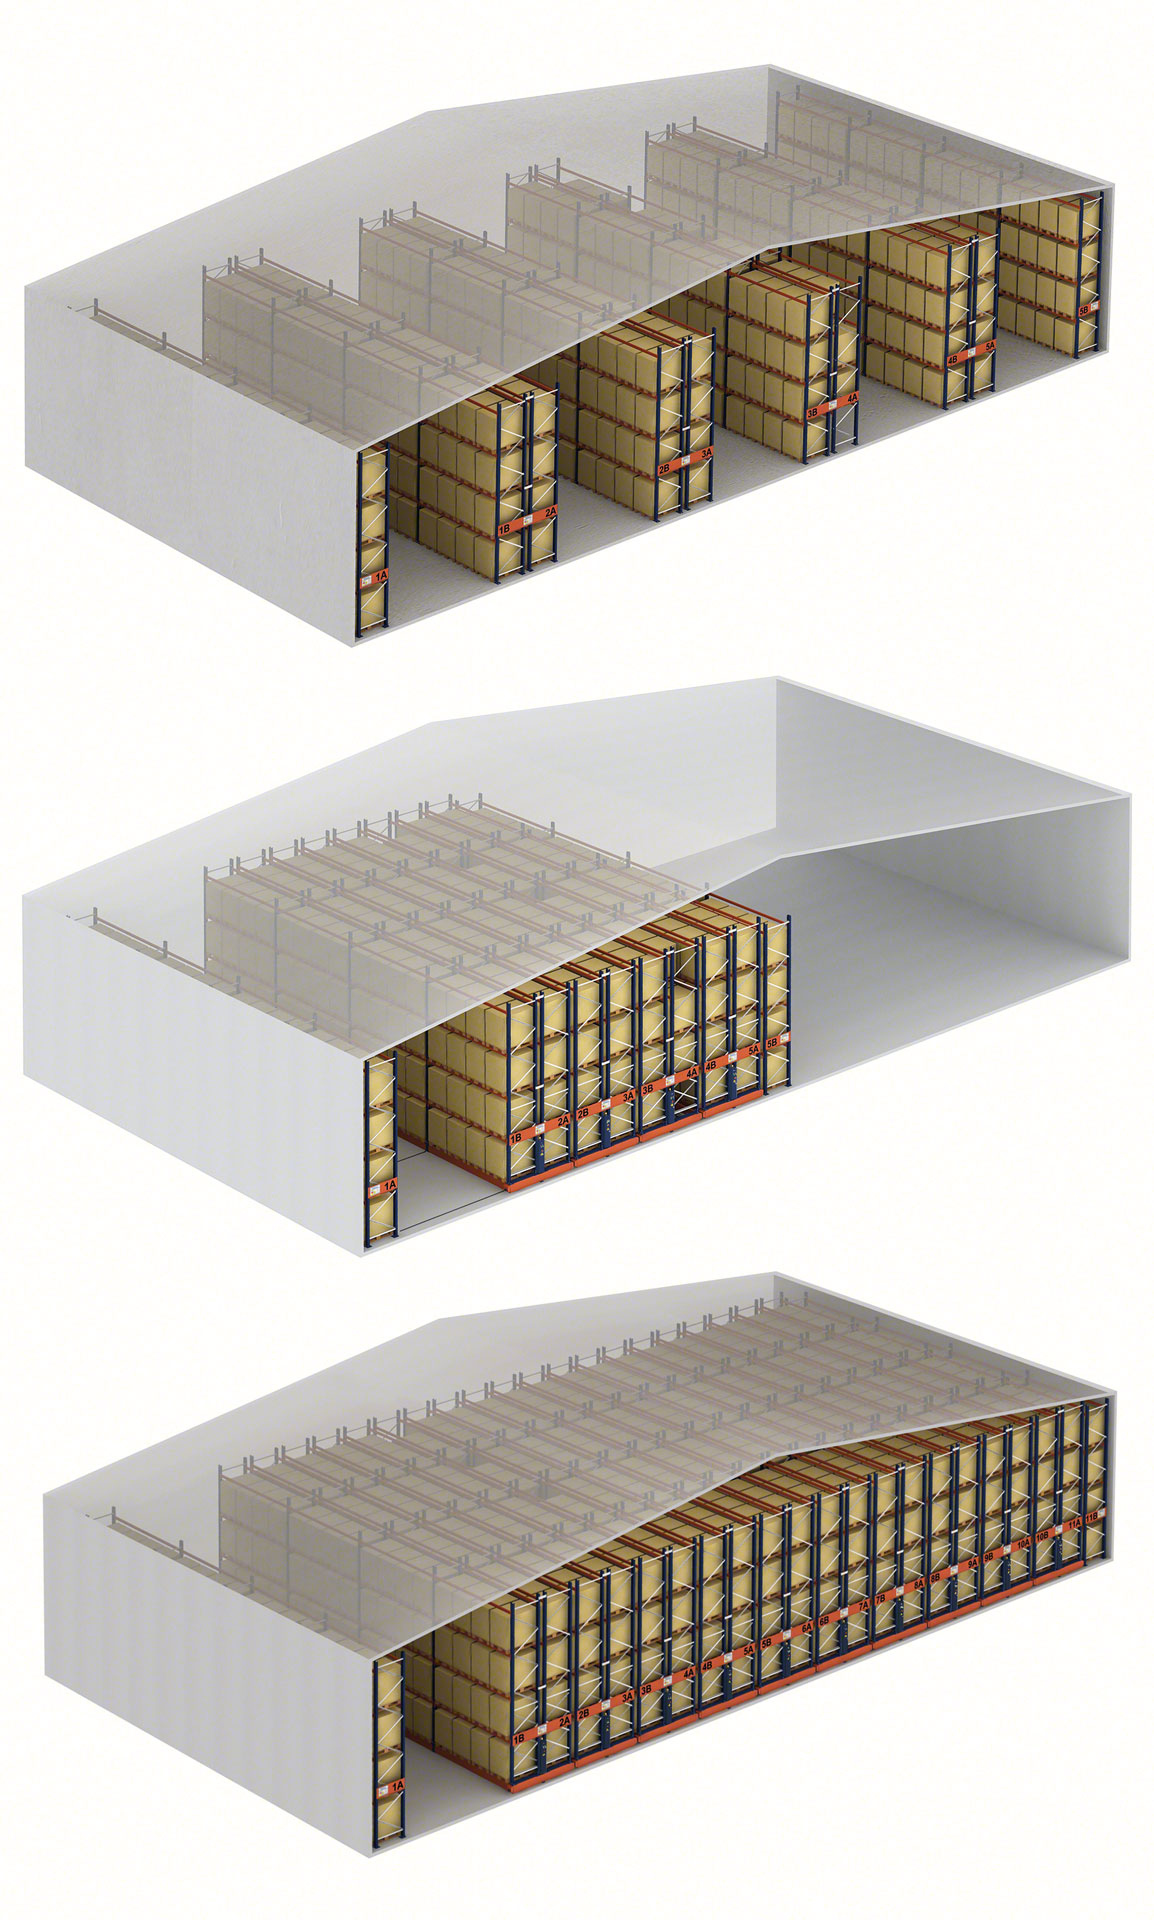 Regały ruchome pozwalają zaoszczędzić przestrzeń w magazynie w porównaniu do regałów paletowych